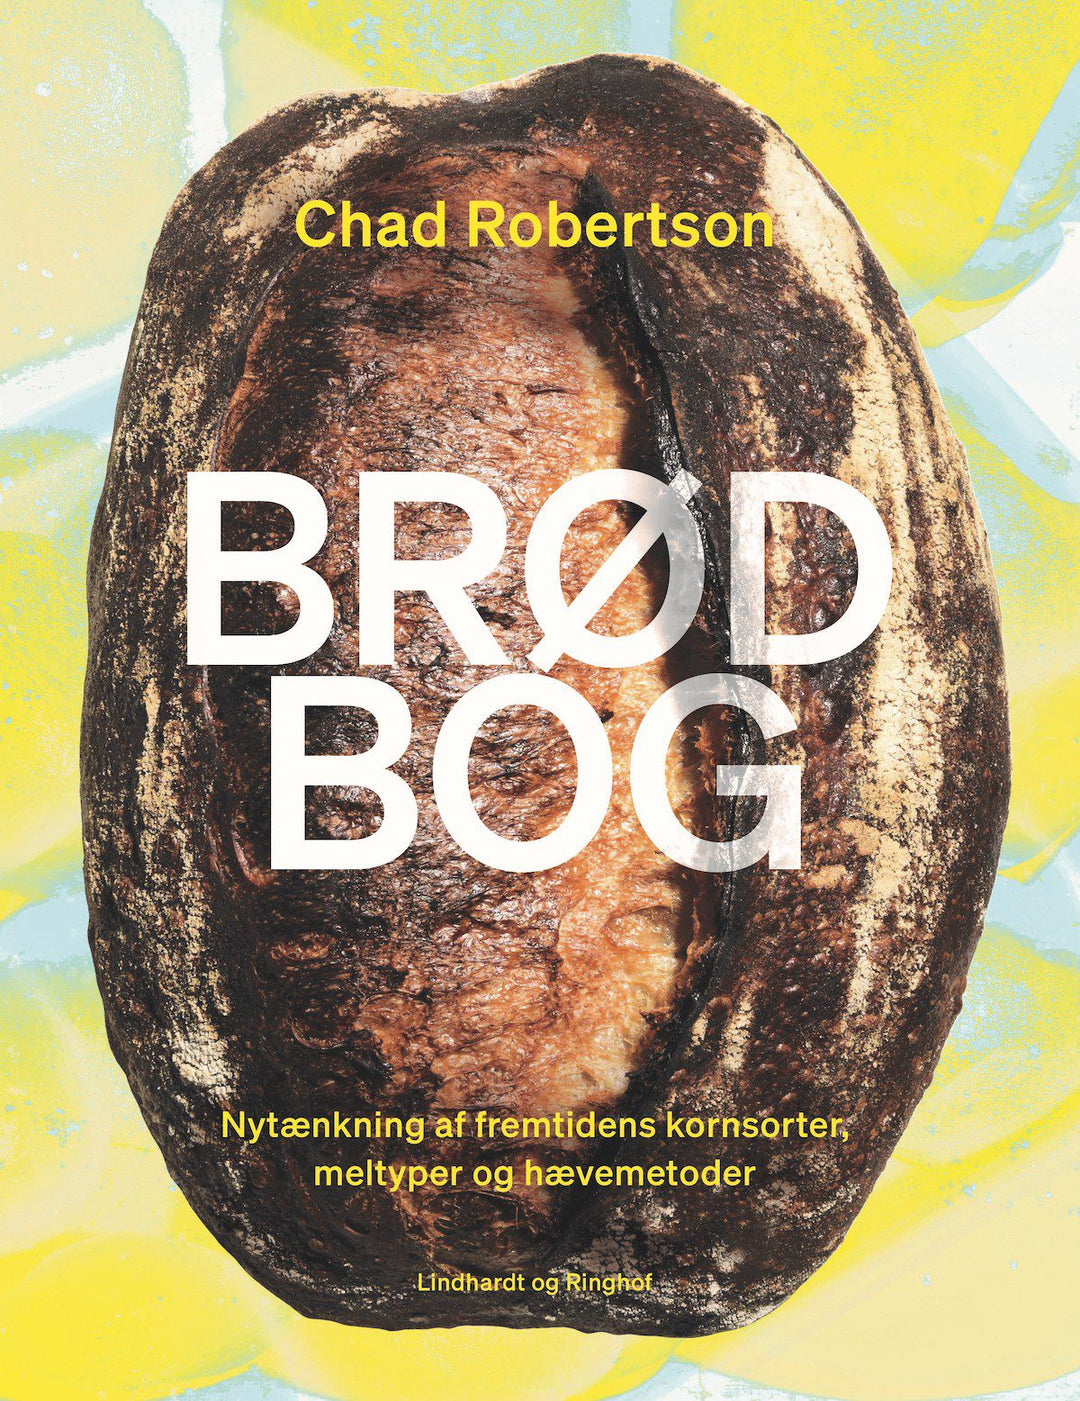 Chad Robertson Brødbog